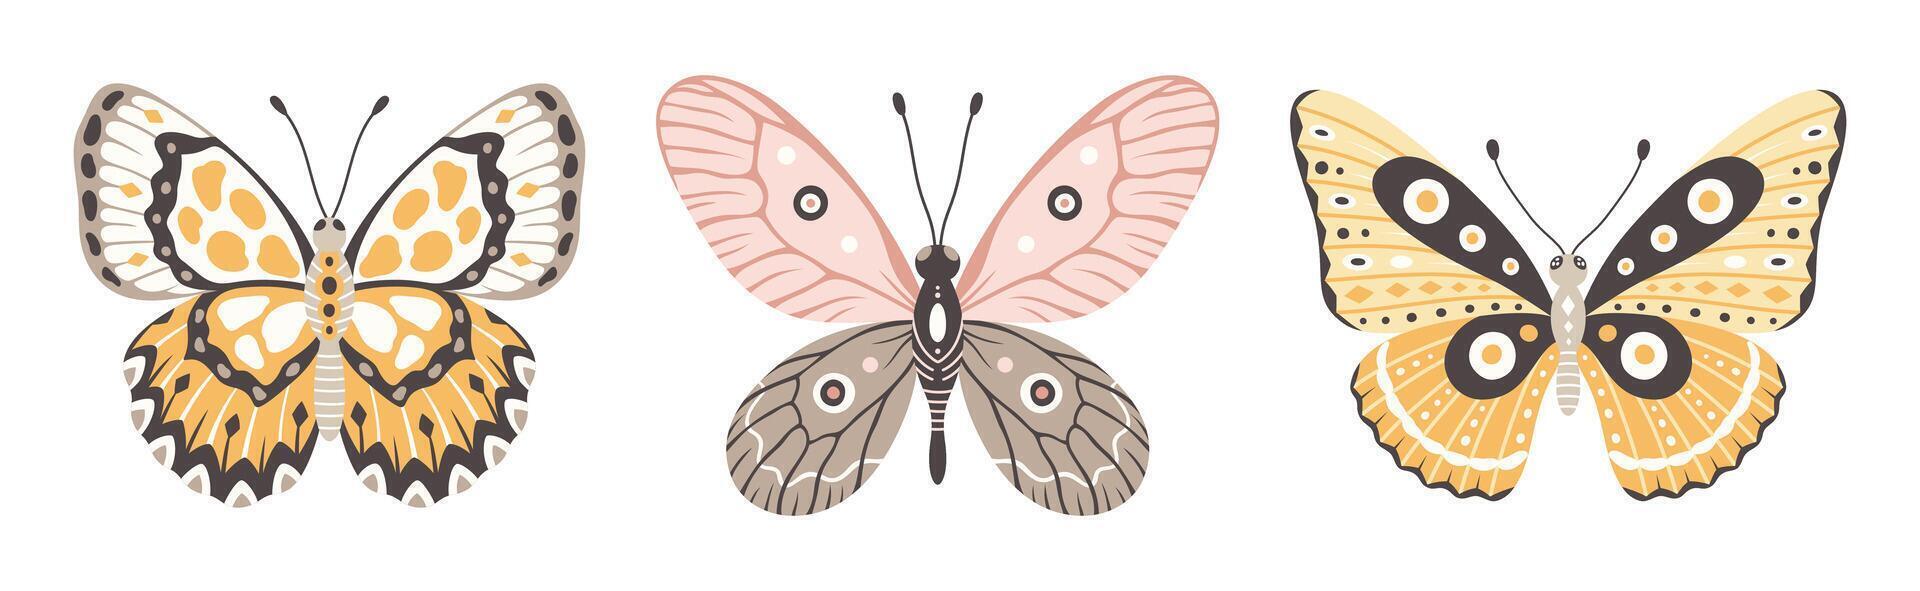 Schmetterling Satz, drei Elemente, Vektor Illustration. bunt Flügel mit abstrakt Ornament, Vorderseite Sicht, ein Symbol zum tätowieren Design. Sommer- Hintergrund, fliegen Insekt